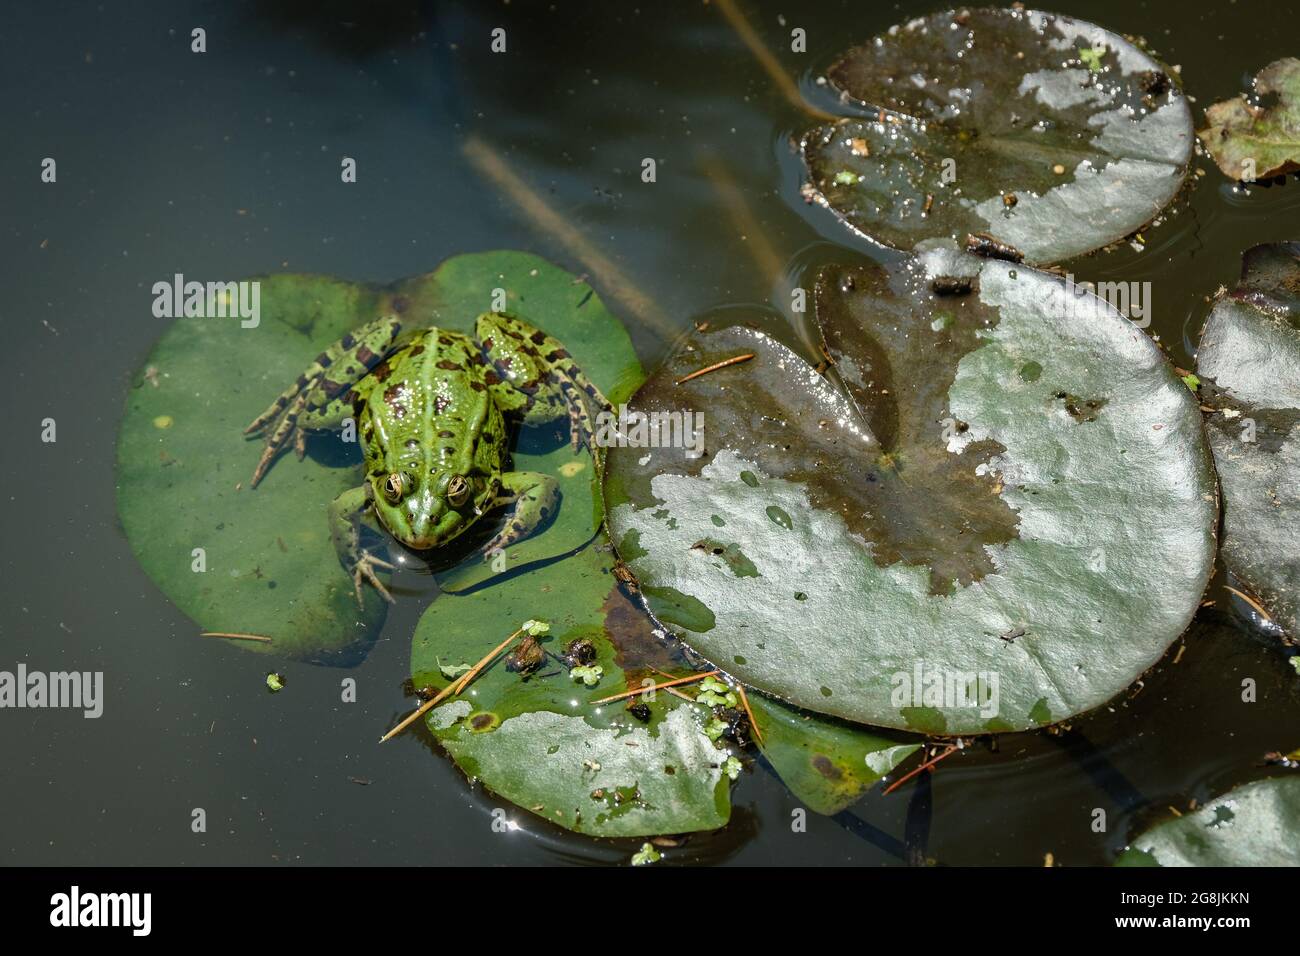 St Martin la Plaine (Frankreich), 19. Juli 2021. Ein grüner Frosch auf einem Seerosenblatt. Stockfoto